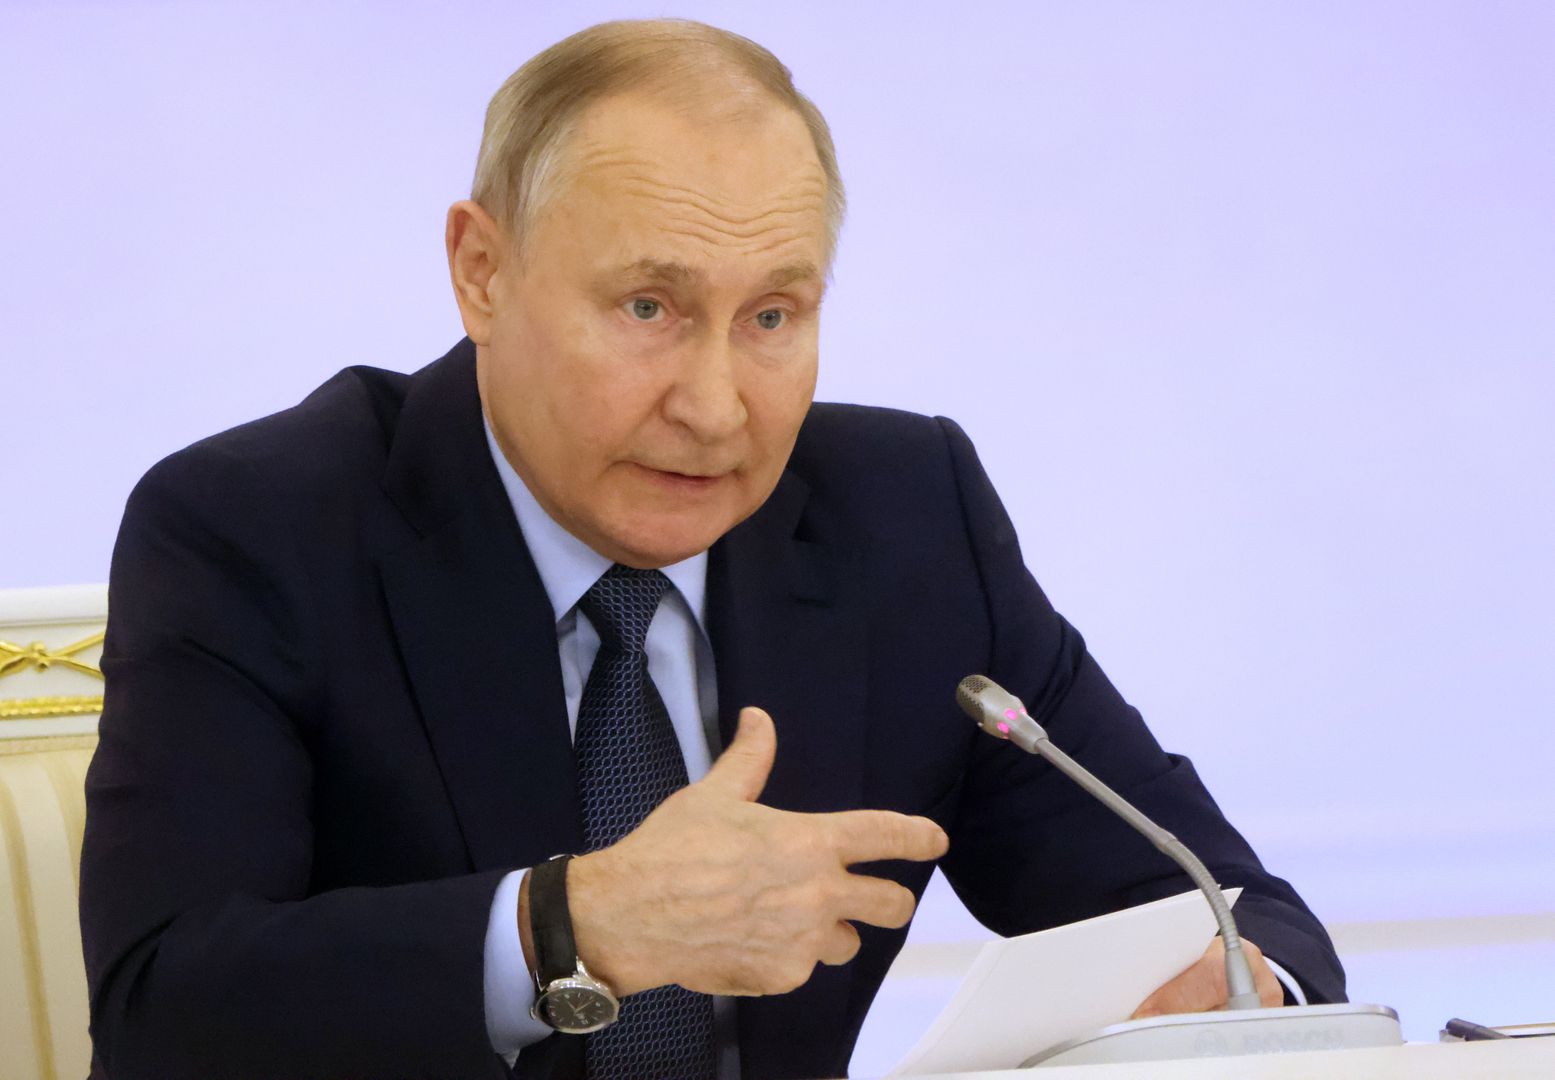 Dwa zdjęcia Putina. Co się dzieje z jego twarzą?